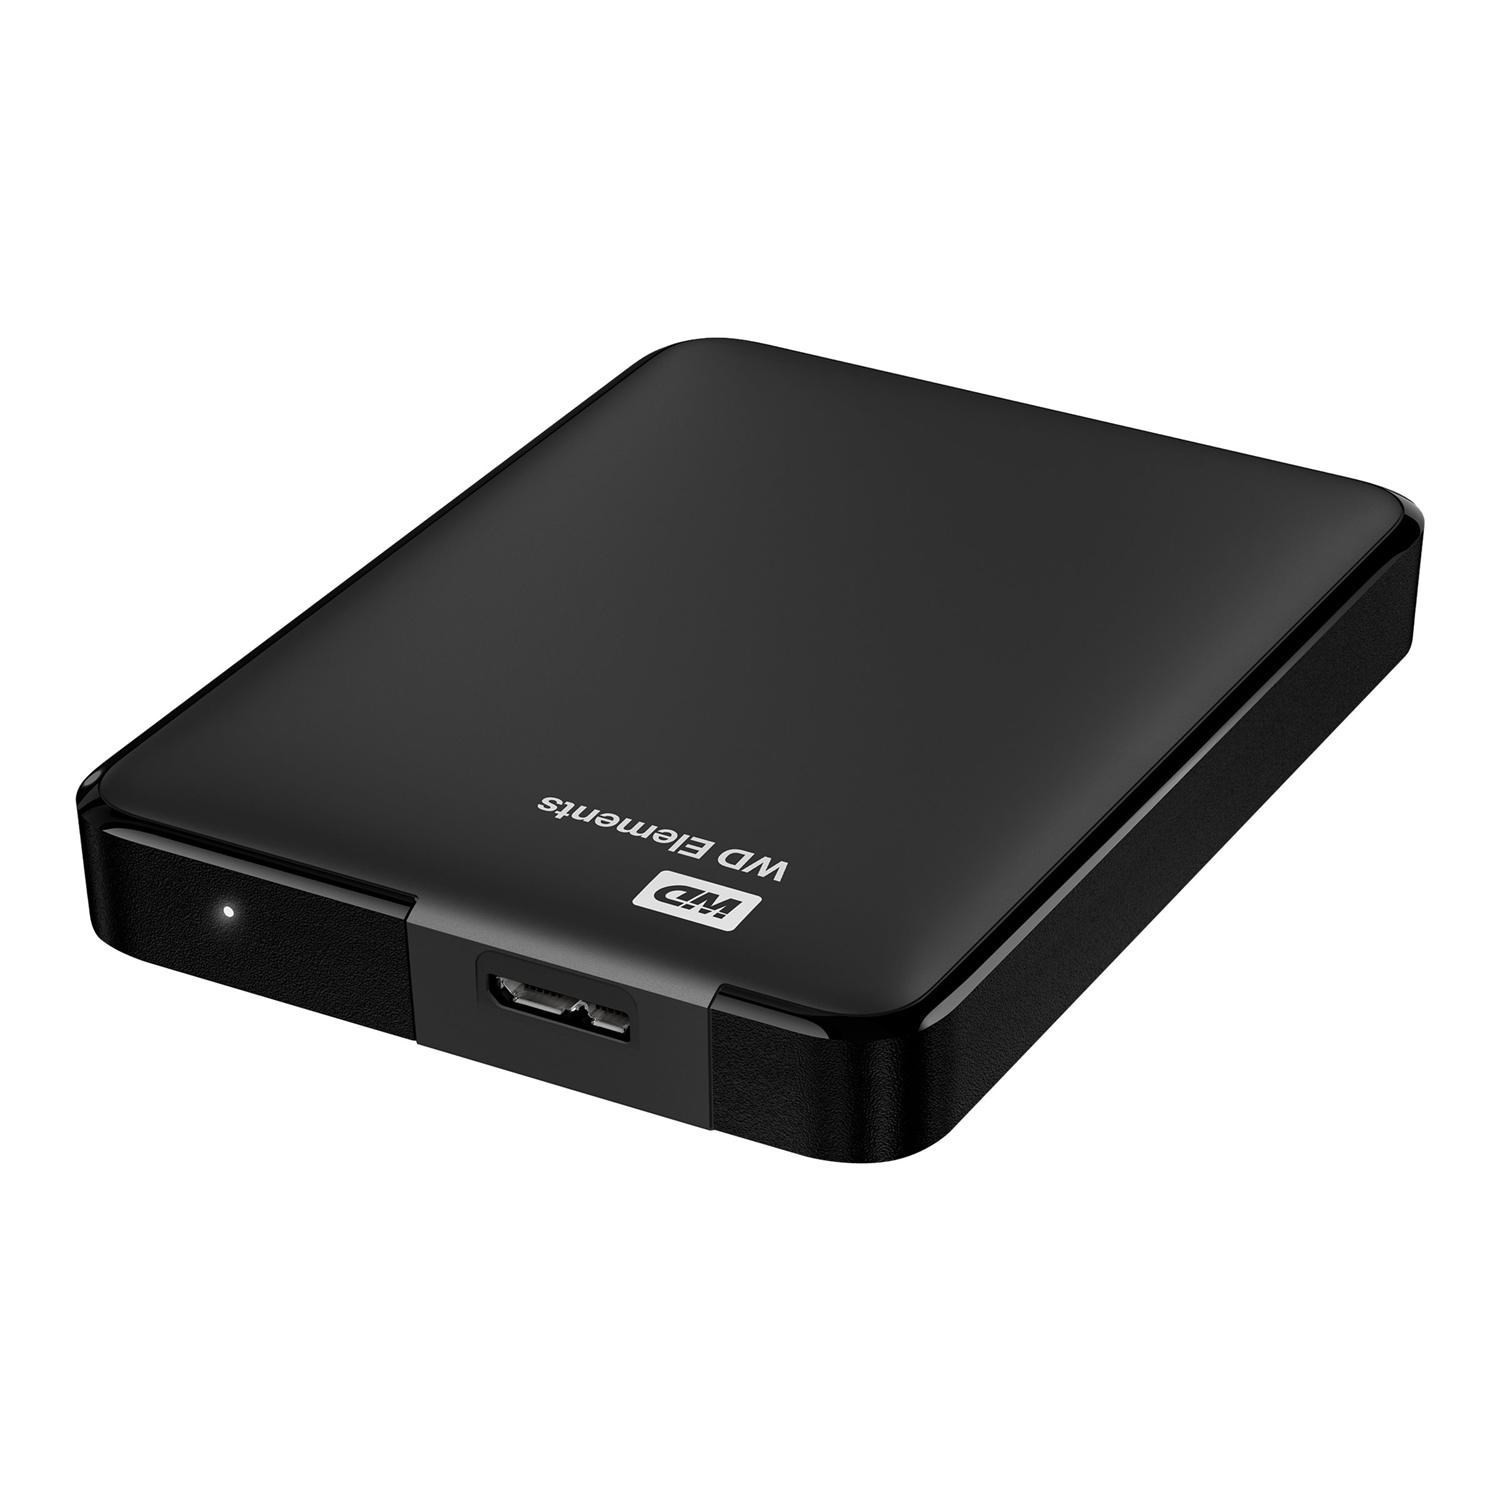 Original Western Digital Elements Black 2TB USB 3.0 External Hard Drive (WDBU6Y0020BBK-WESN)